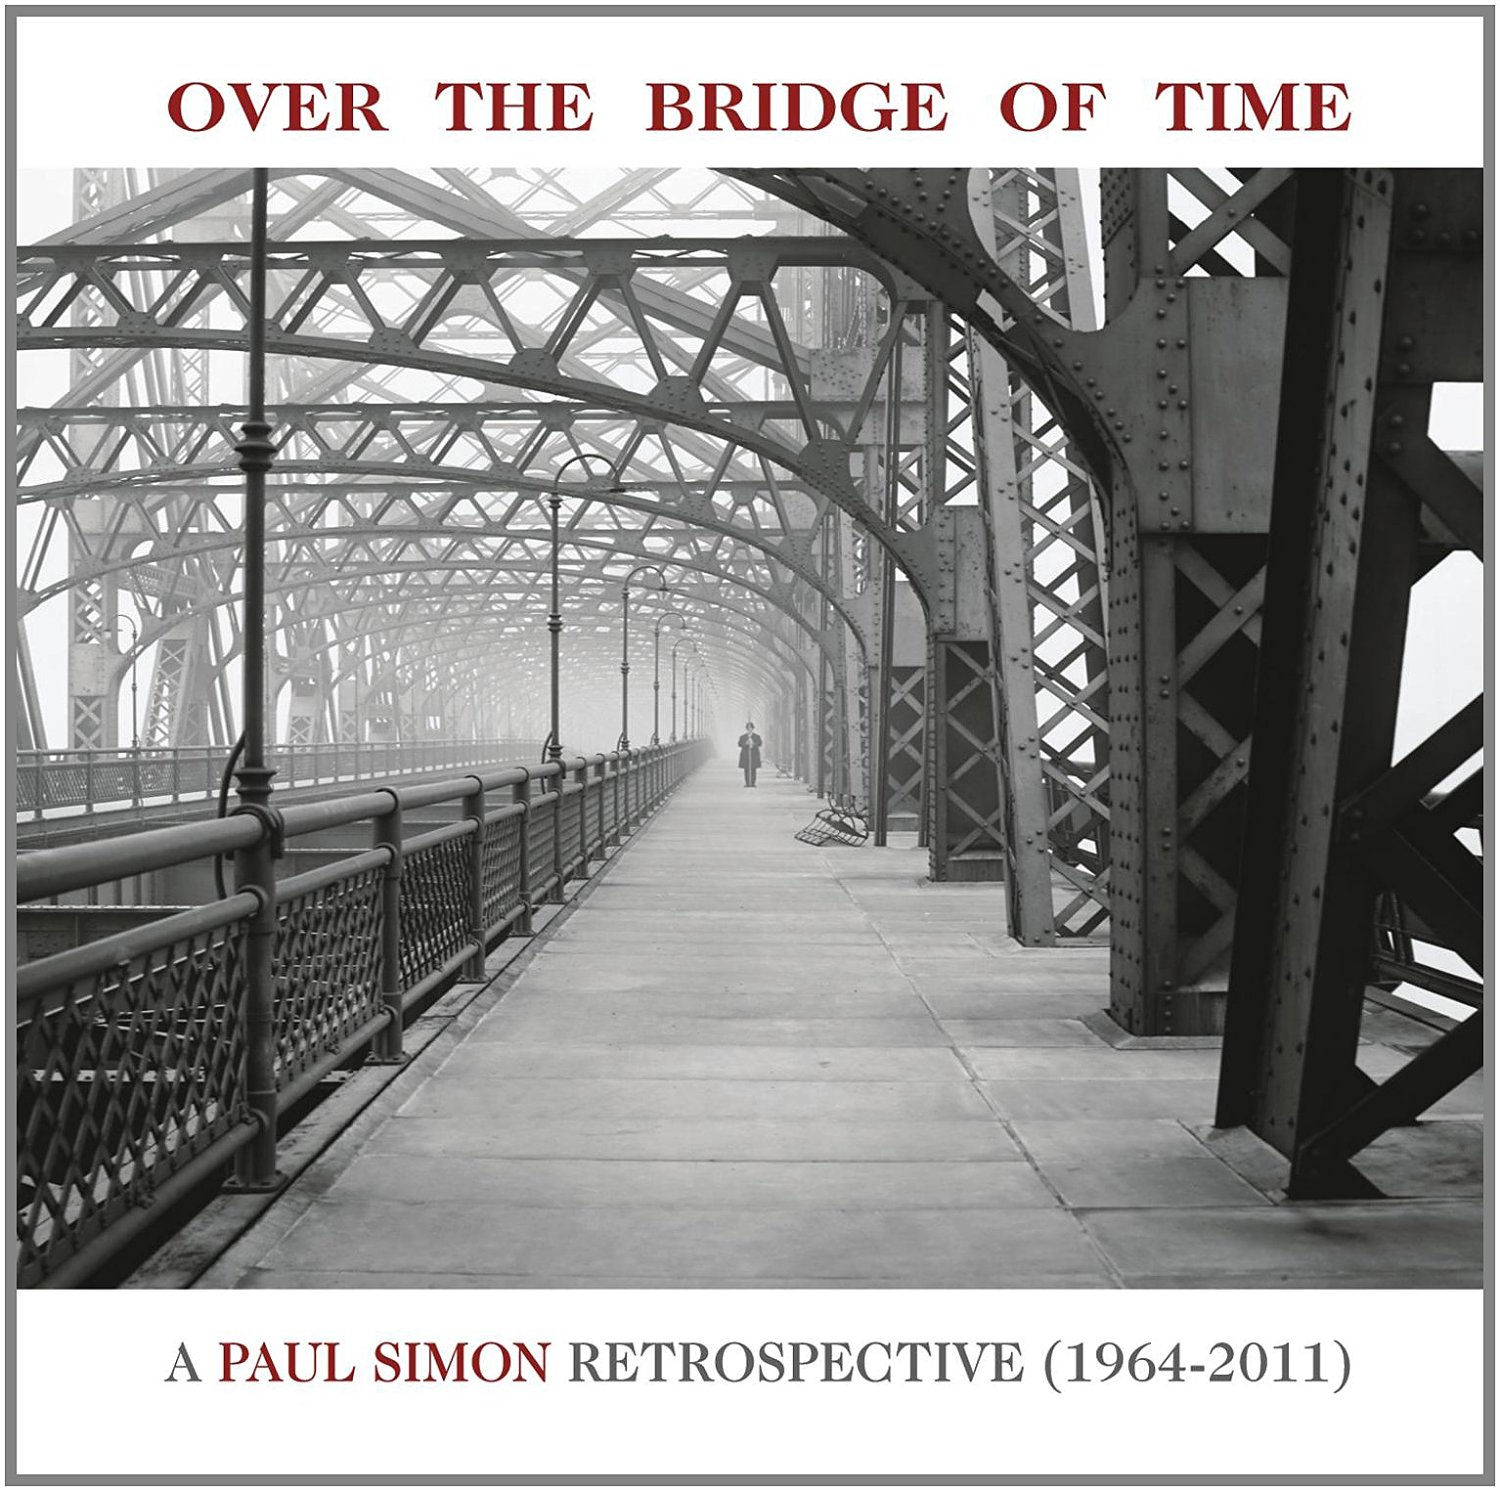 Paul Simon – Over The Bridge Of Time: A Paul Simon Retrospective 1964-2011 (2013) [AcousticSounds FLAC 24bit/96kHz]